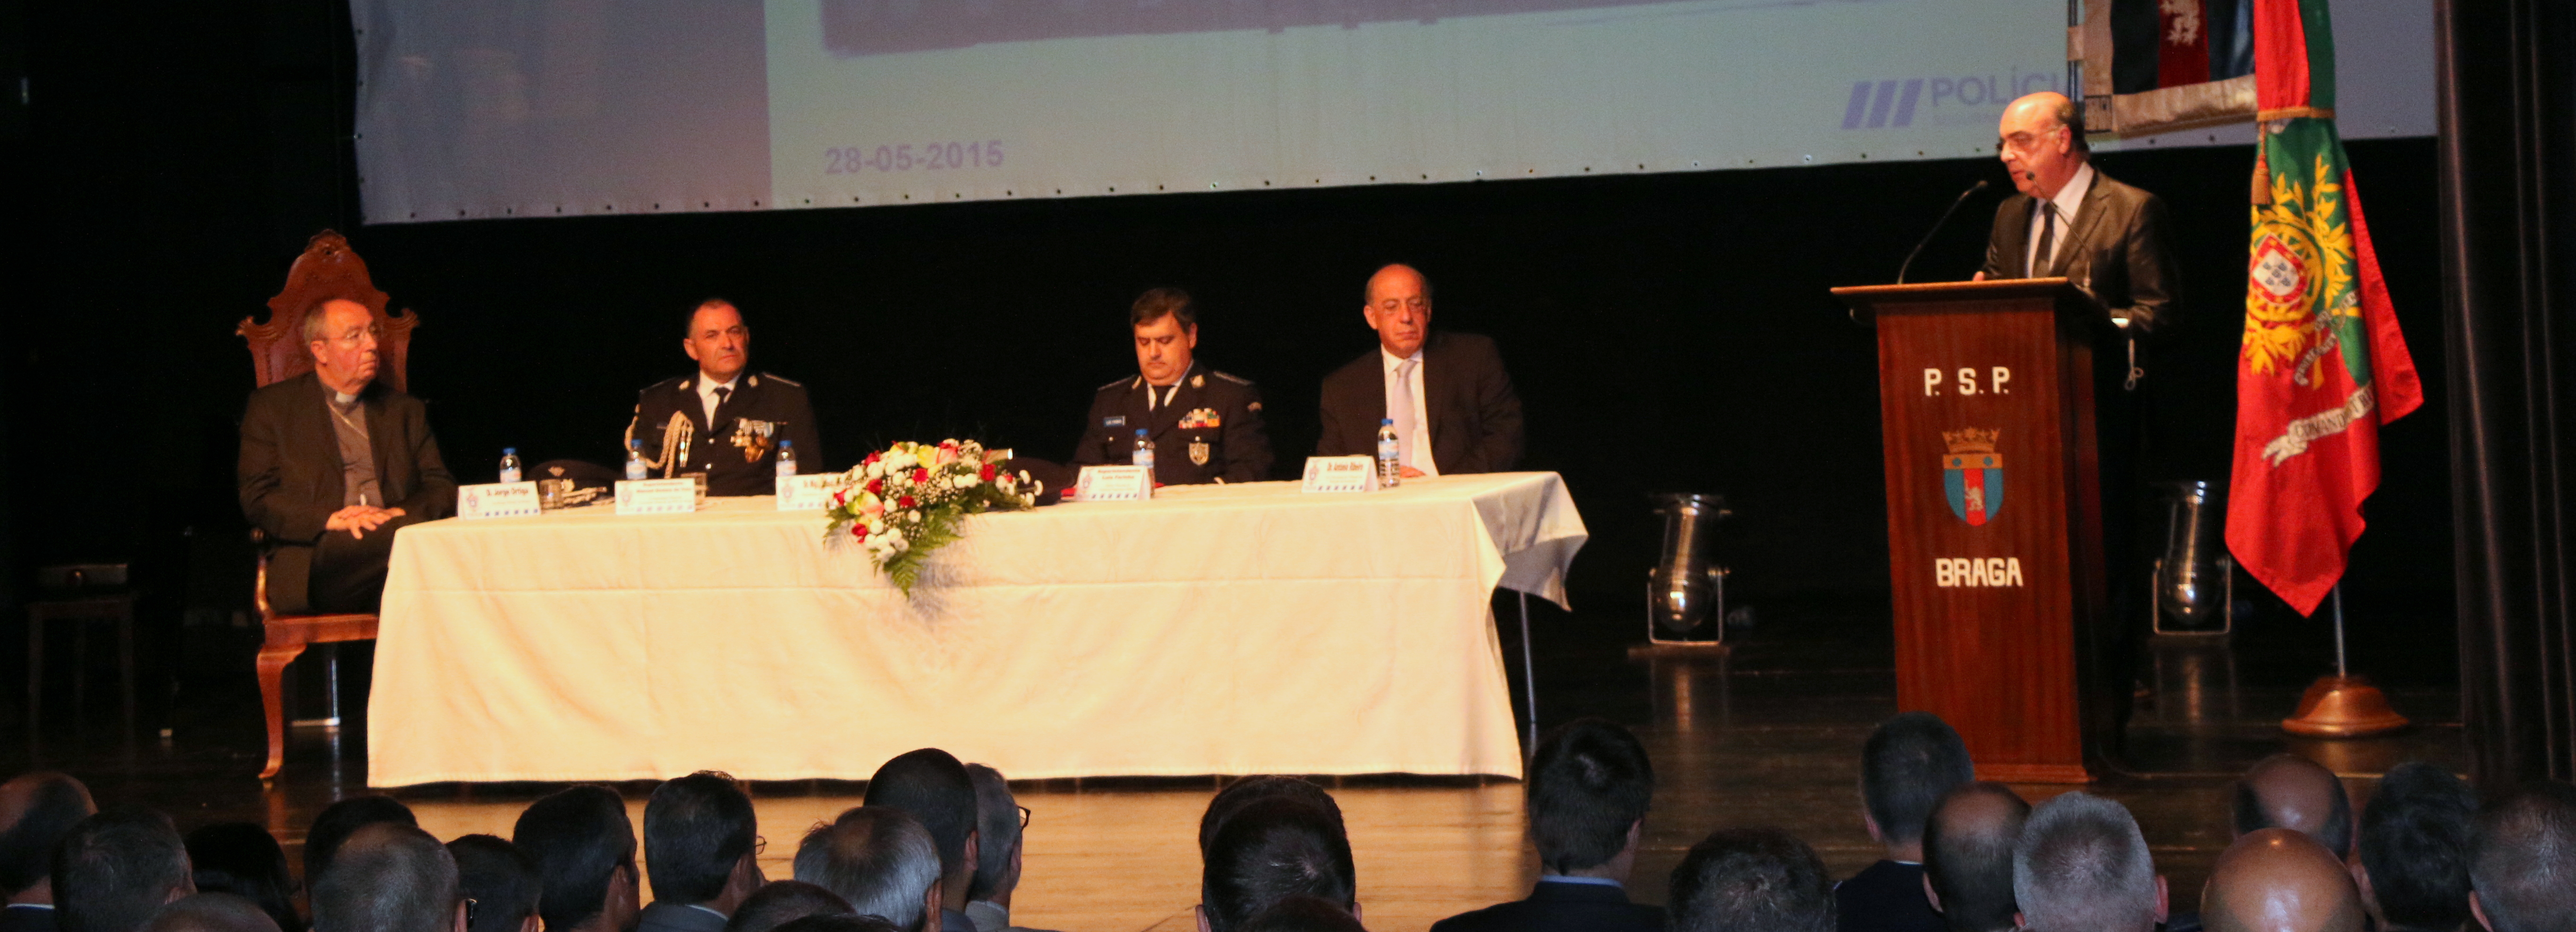 Gala de Comemoração do 138º Aniversário do Comando Distrital da PSP de Braga